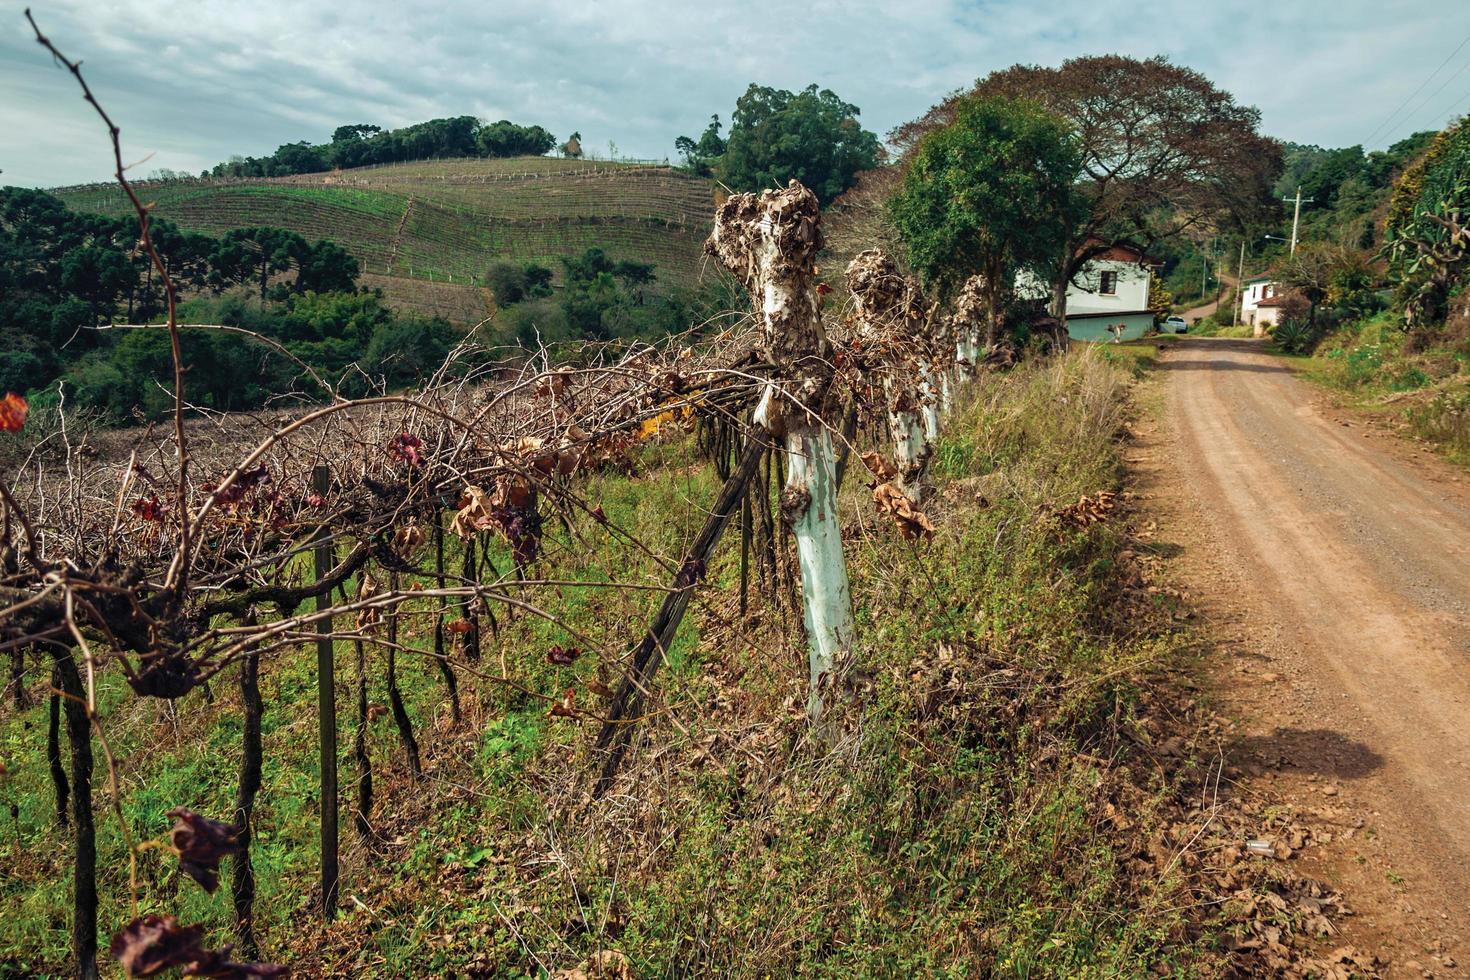 paysage rural avec plusieurs rangées de troncs sans feuilles et de branches de vigne à côté d'un chemin de terre près de bento goncalves. une ville de campagne sympathique dans le sud du brésil célèbre pour sa production de vin. photo